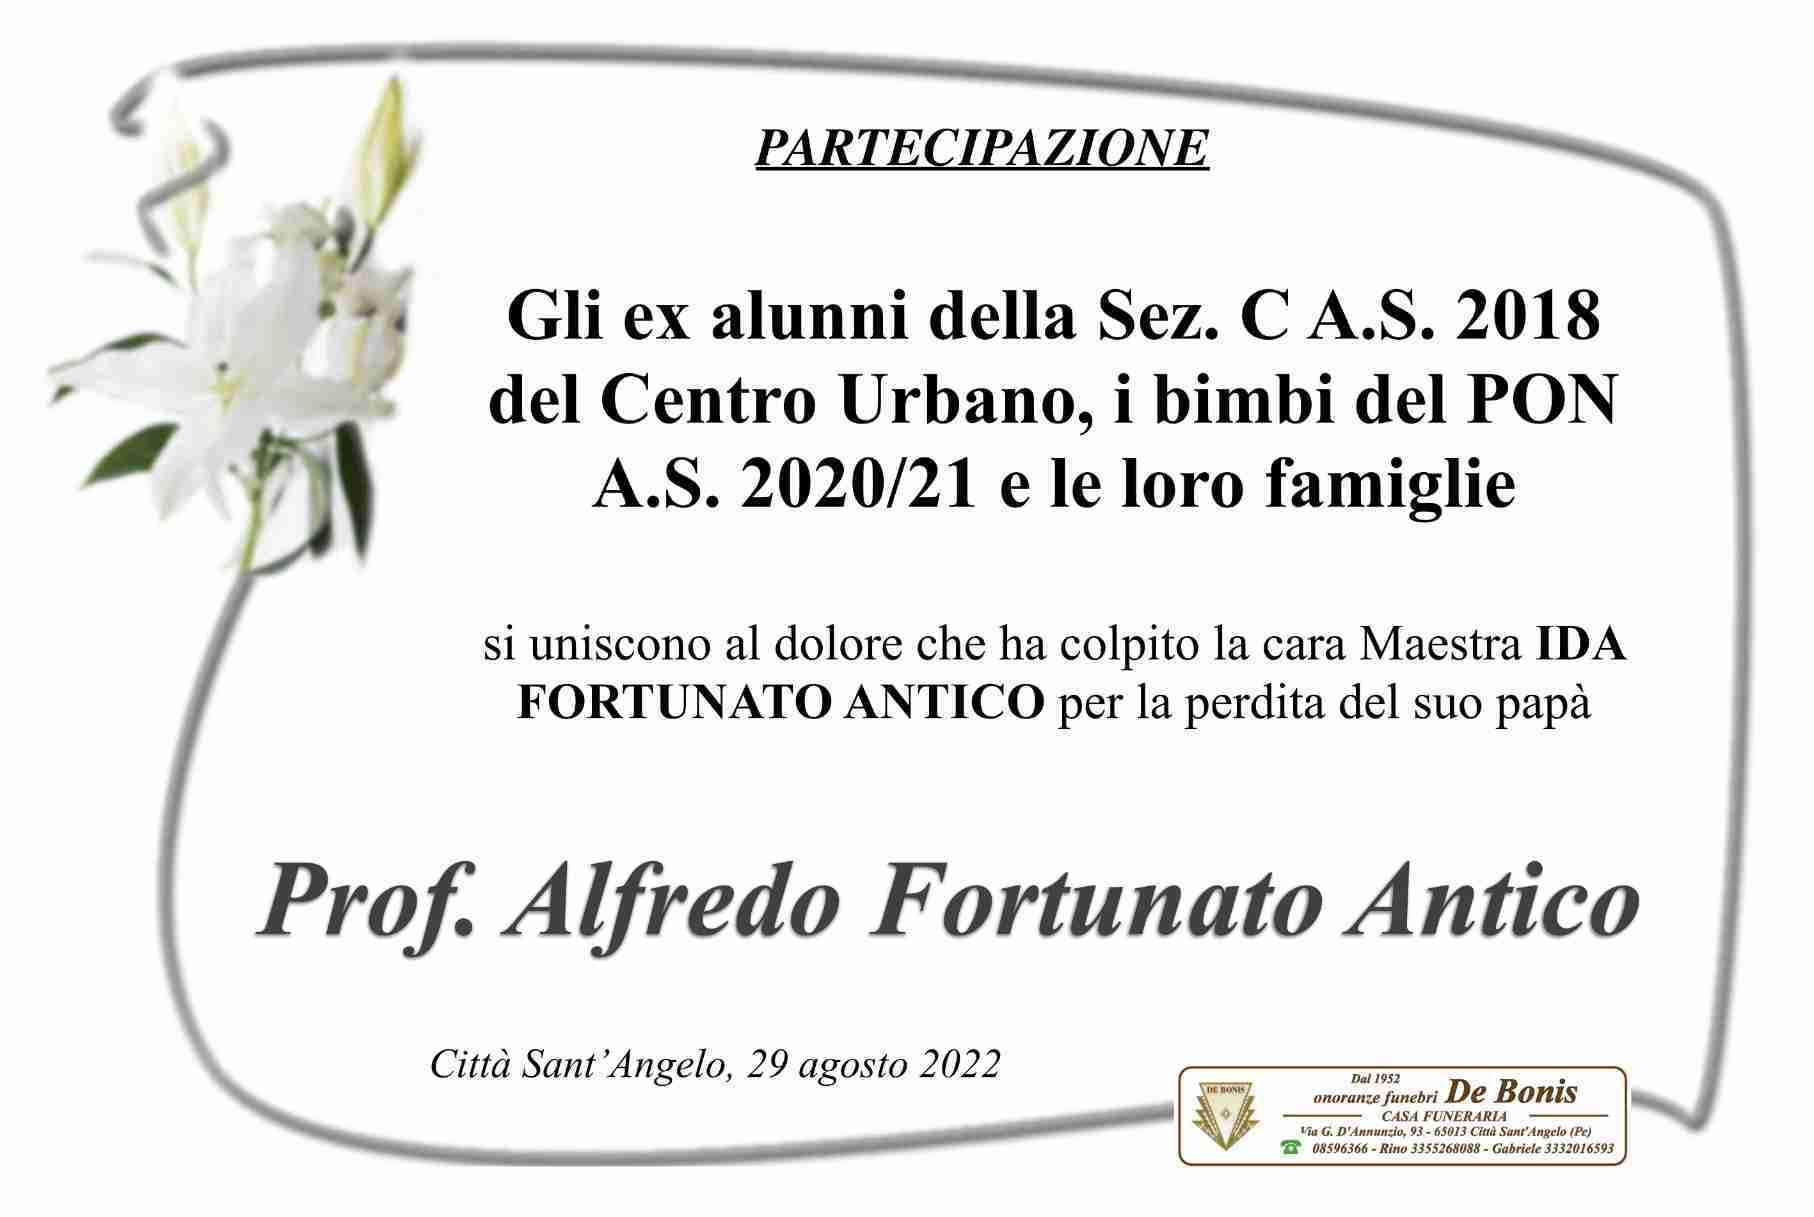 Alfredo Fortunato Antico